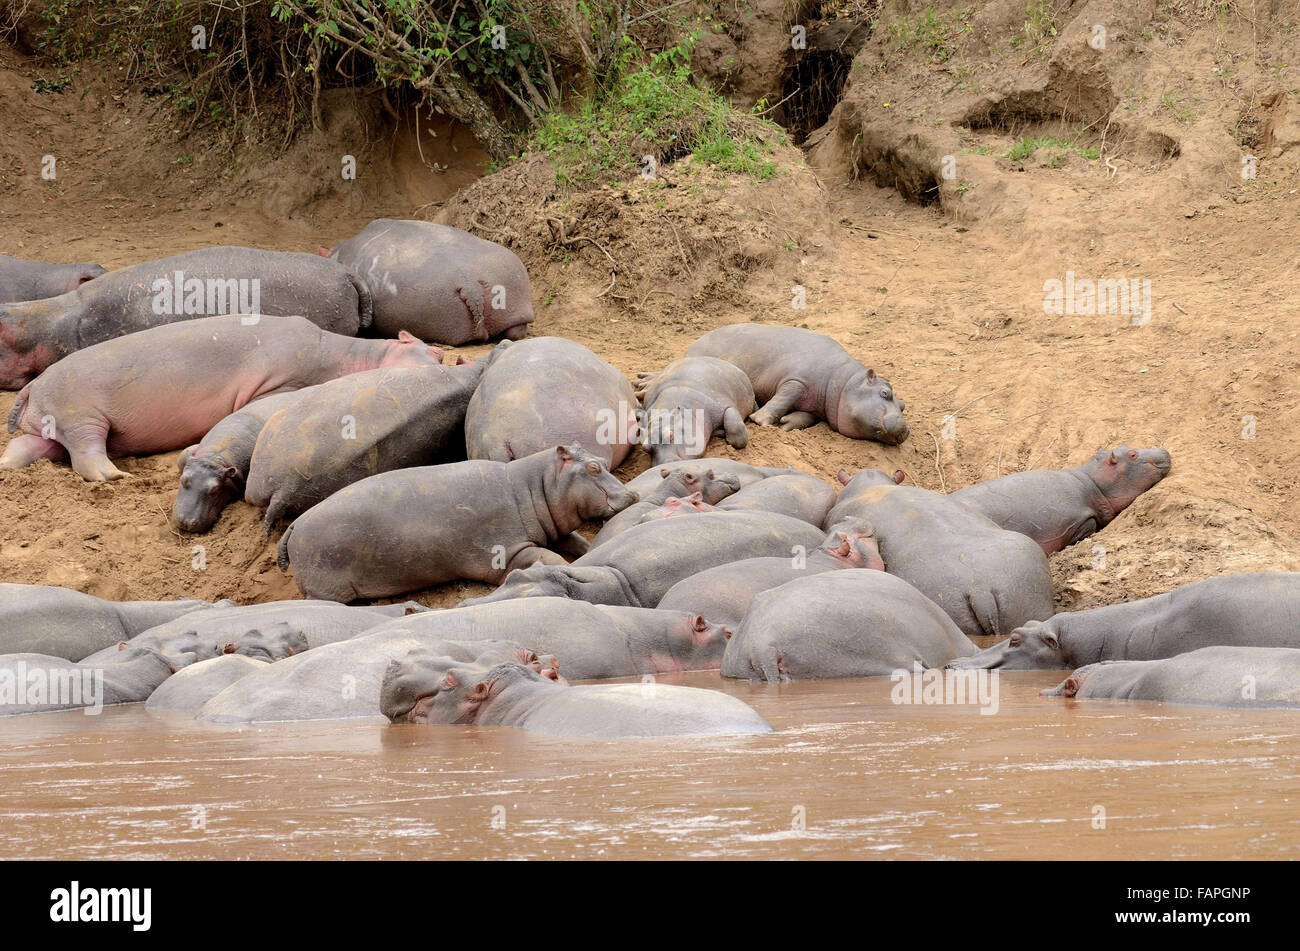 Hipopótamos durmiendo en el río Mara Kenya Foto de stock